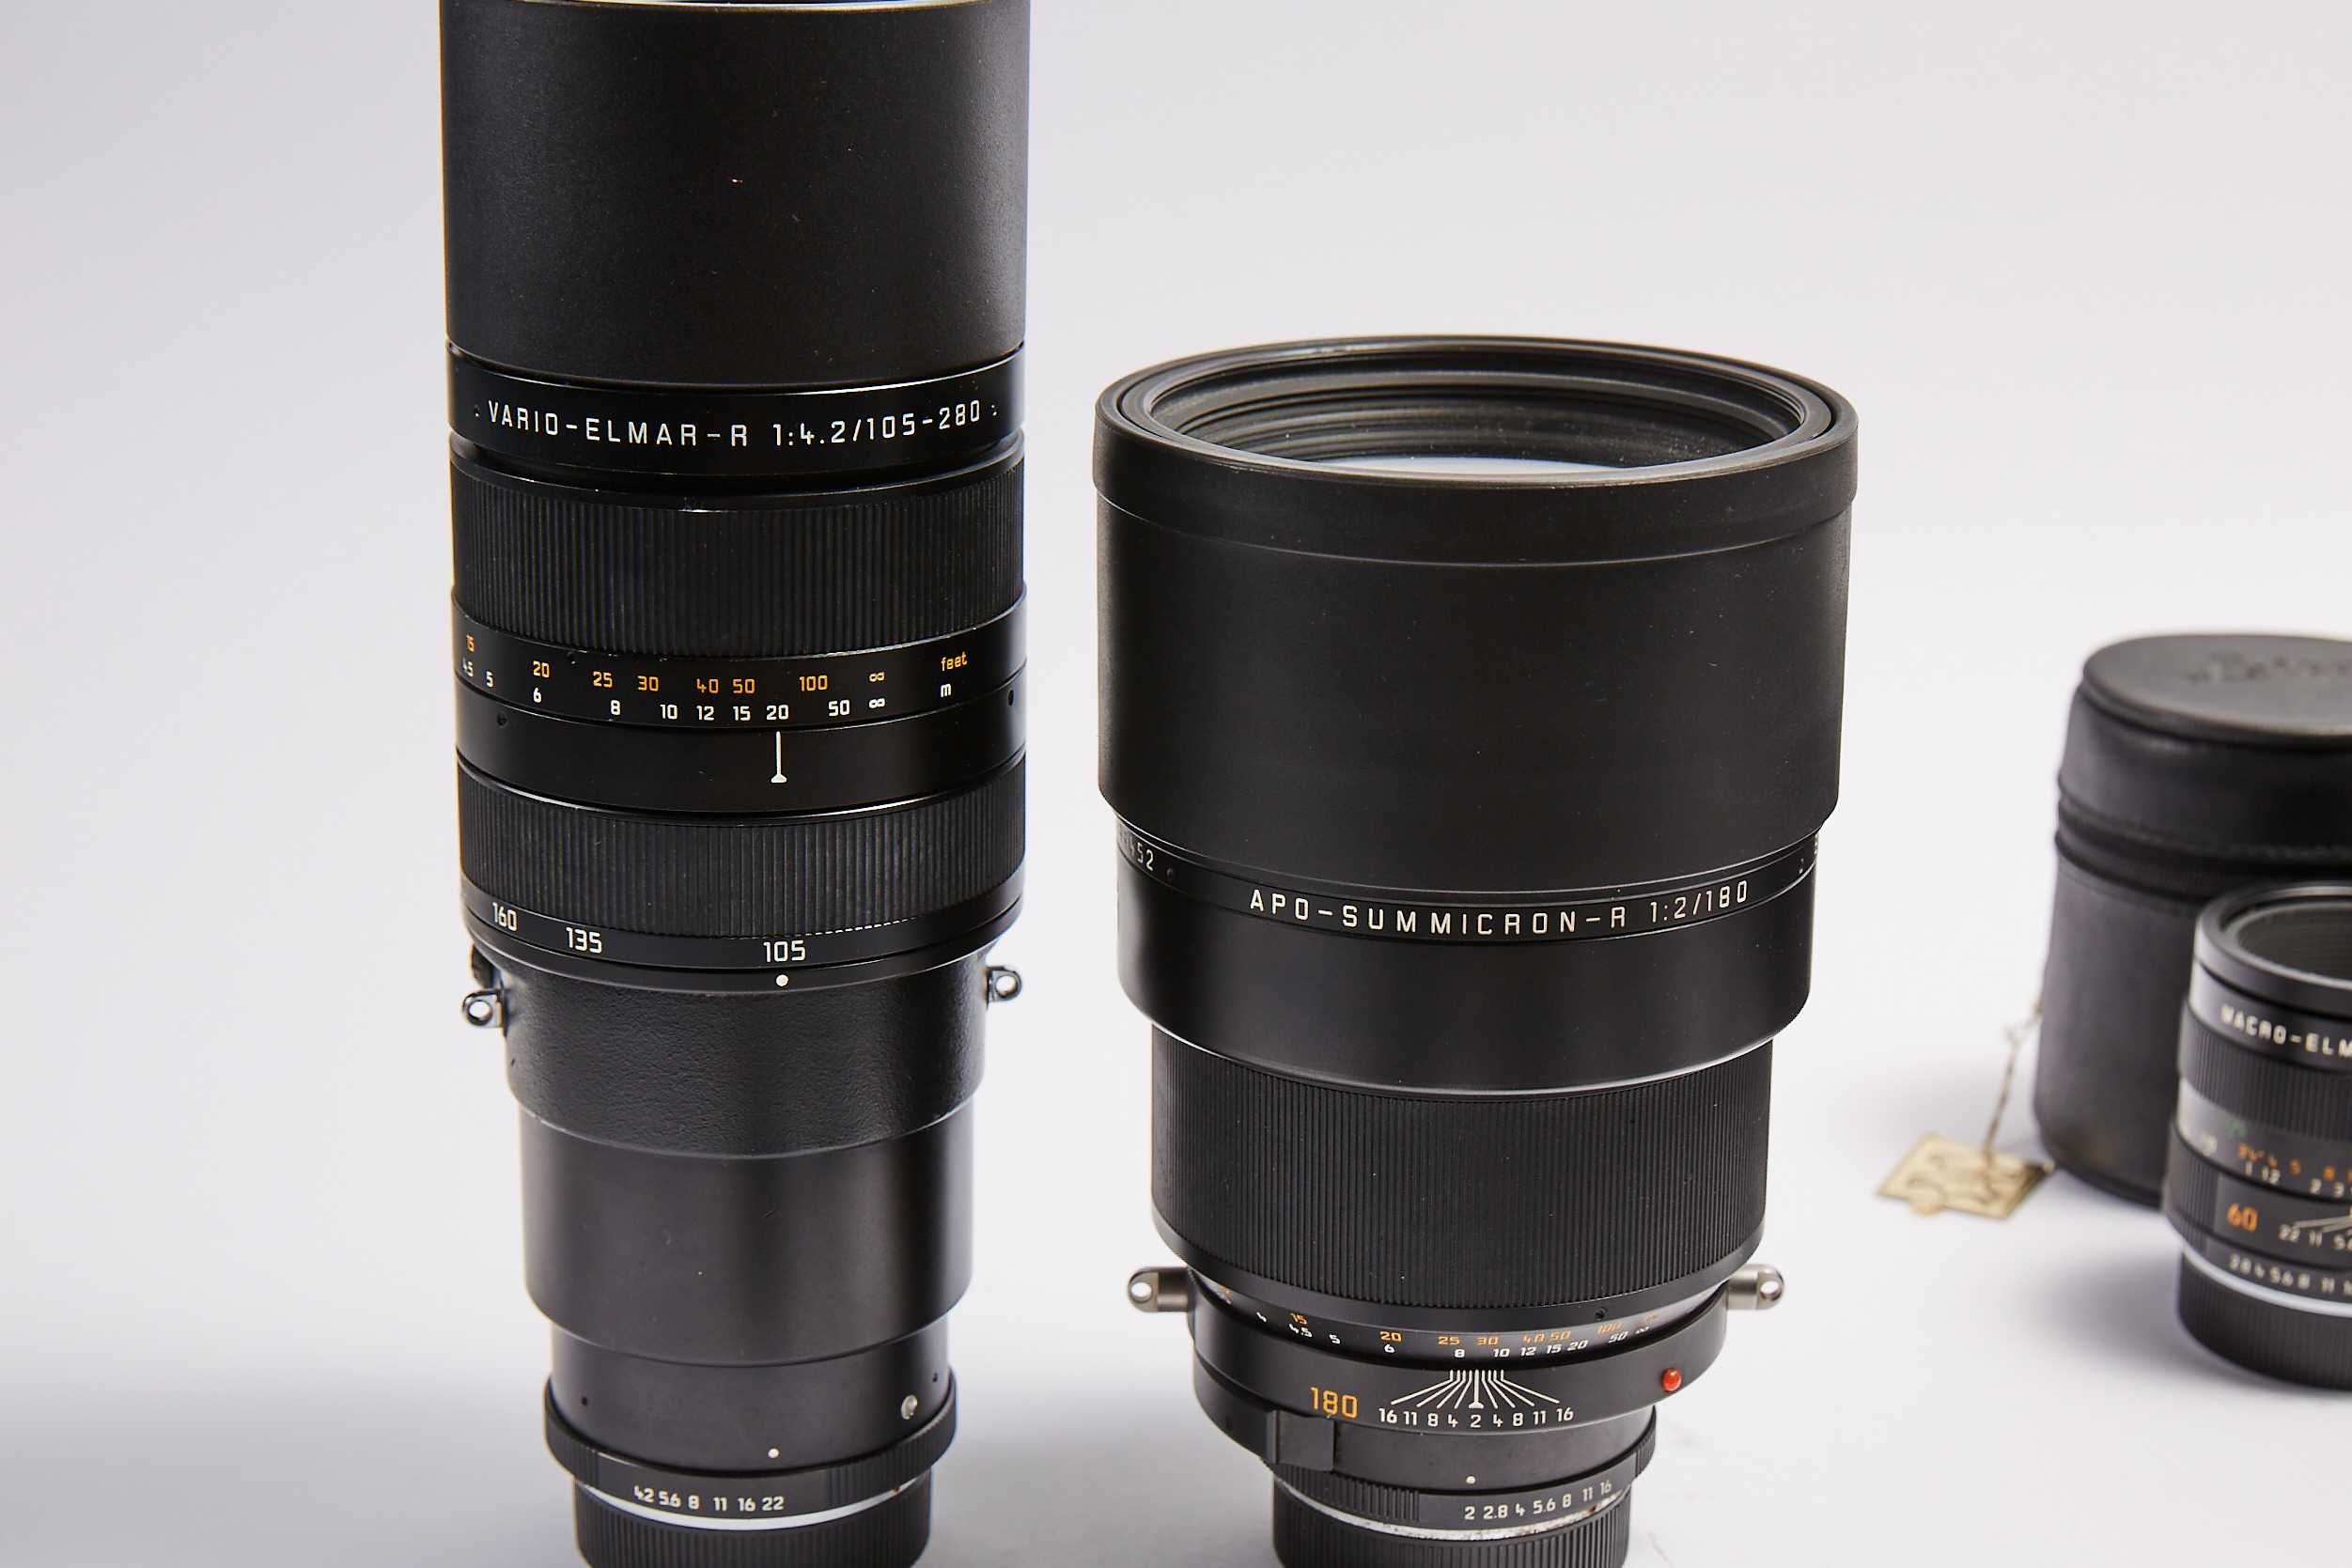 RARYTAS Leica R9 zestaw: obiektywy i akcesoria OKAZJA!